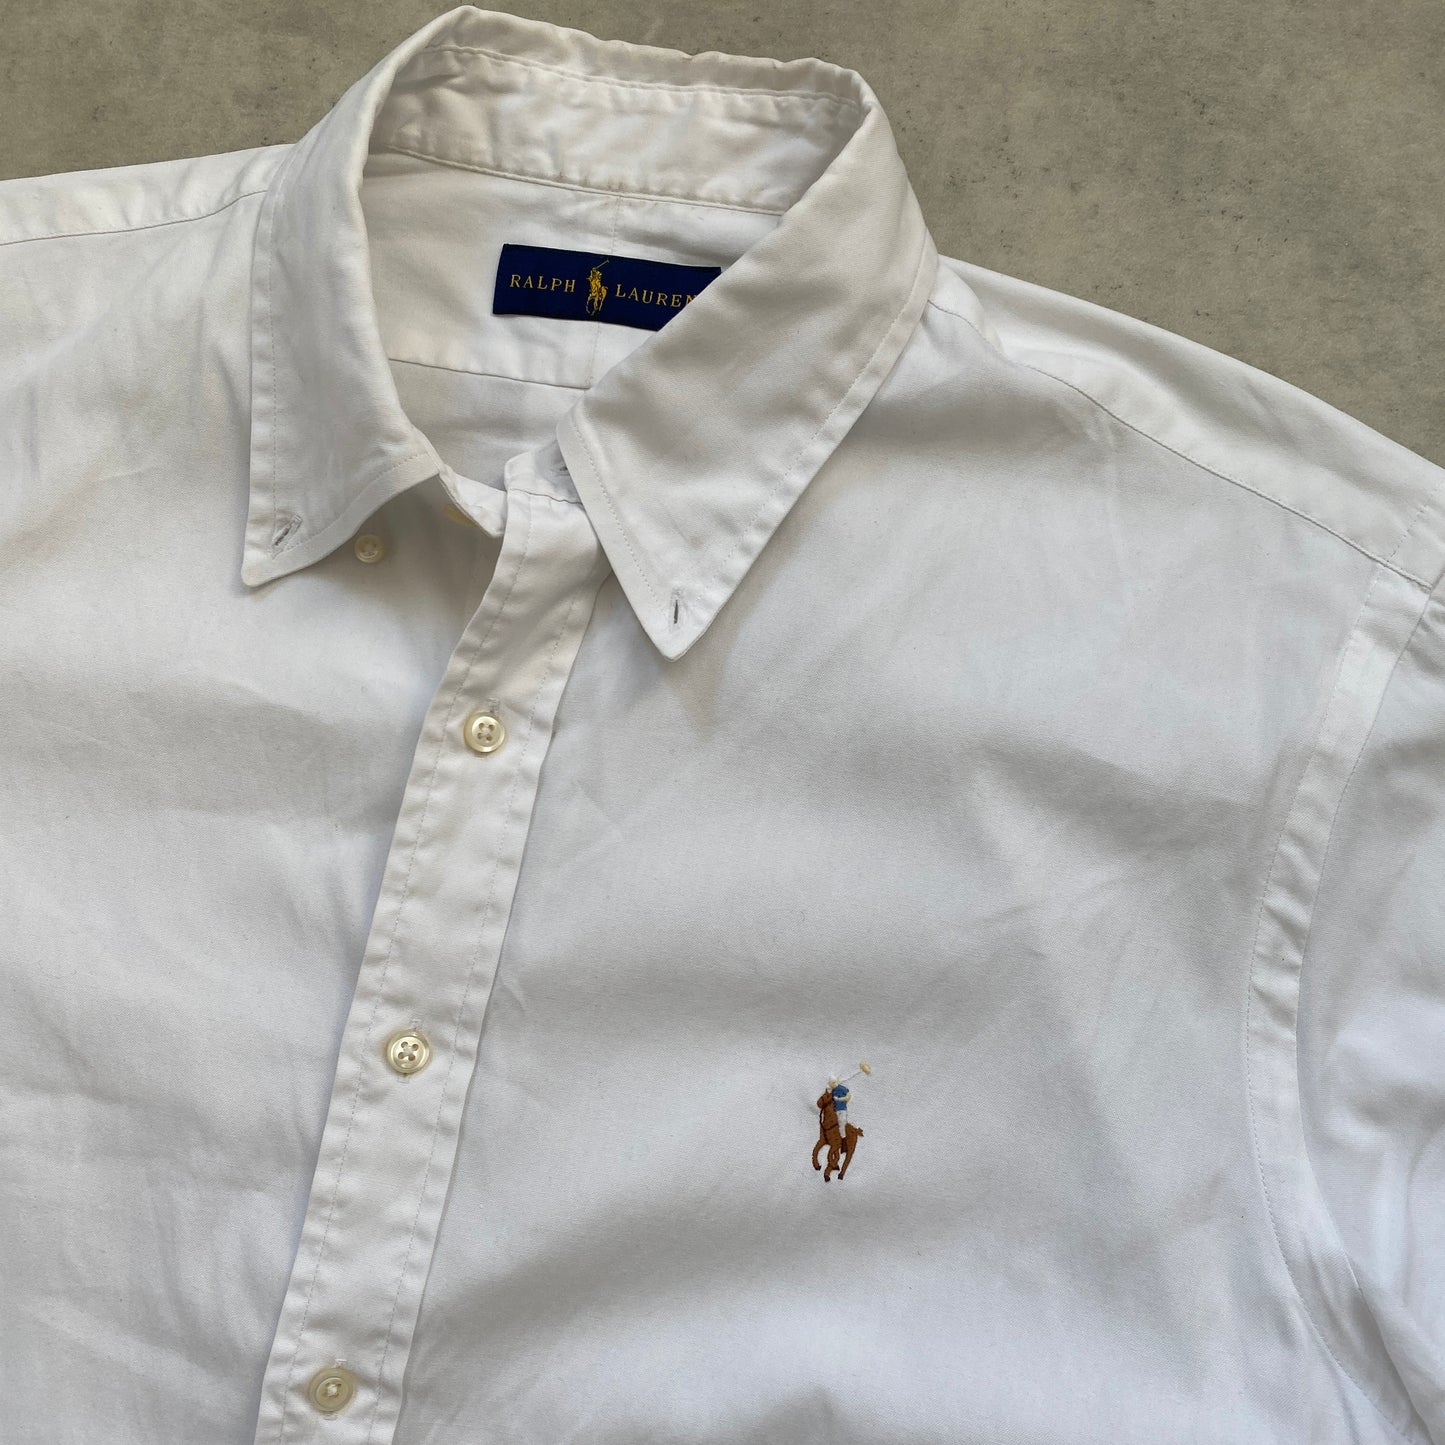 Ralph Lauren shirt (L-XL)